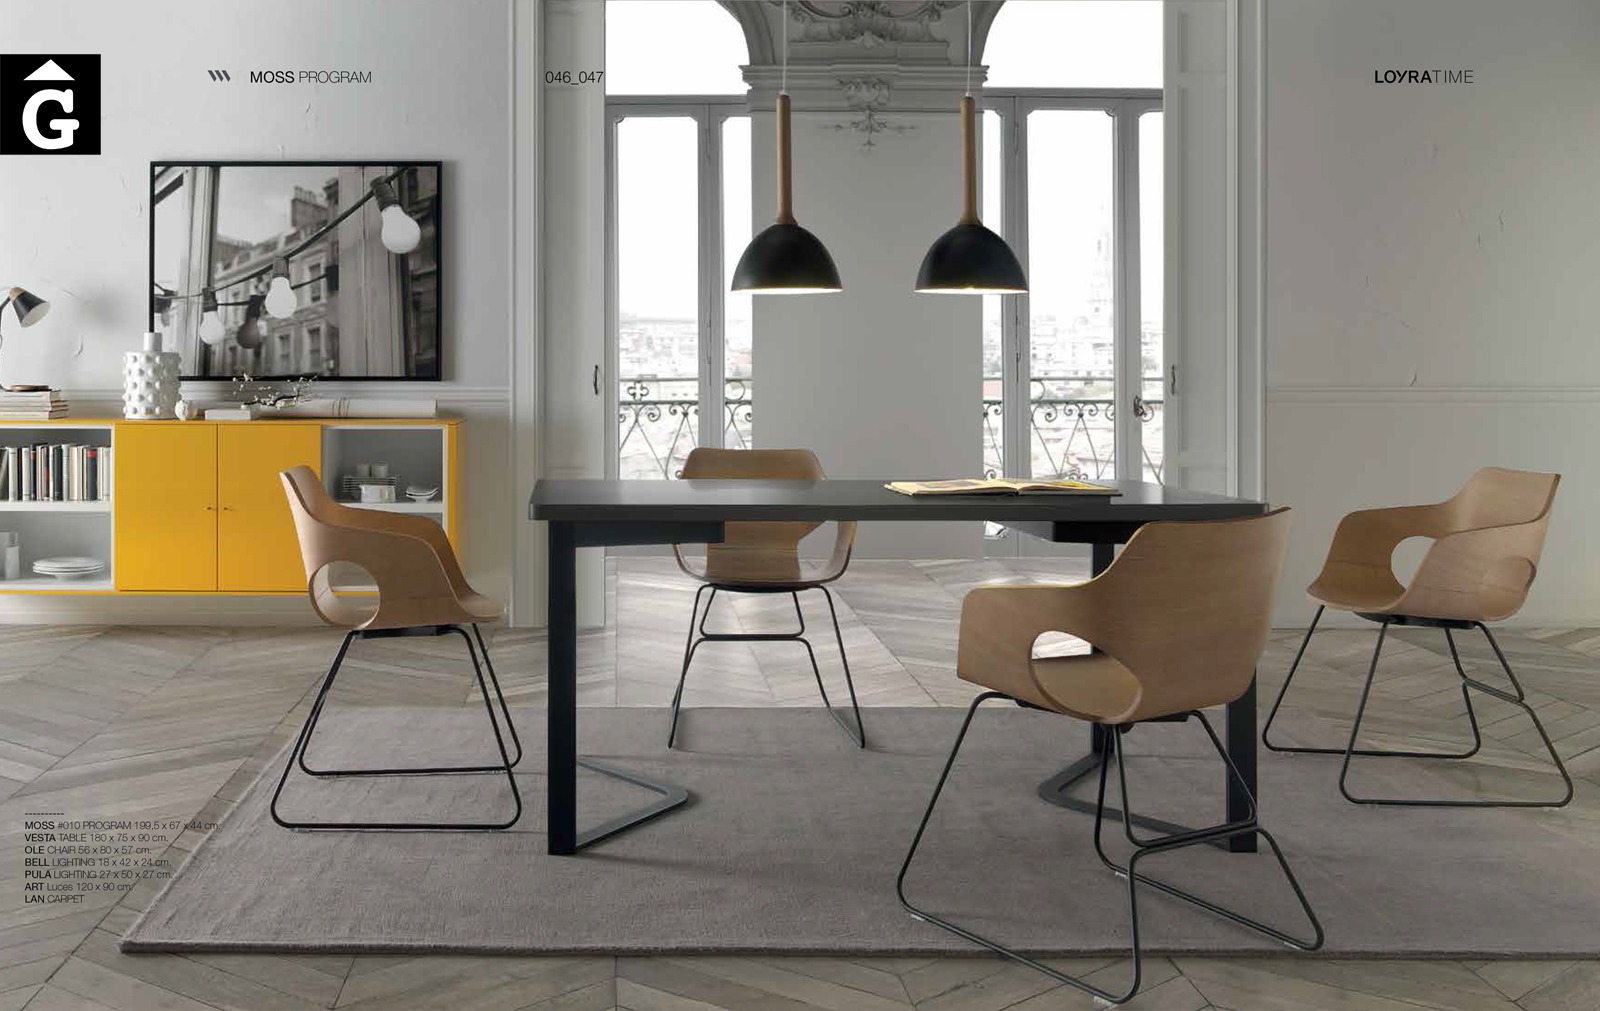 25 1 Loyra muebles by mobles Gifreu Idees per la llar moble de qualitat